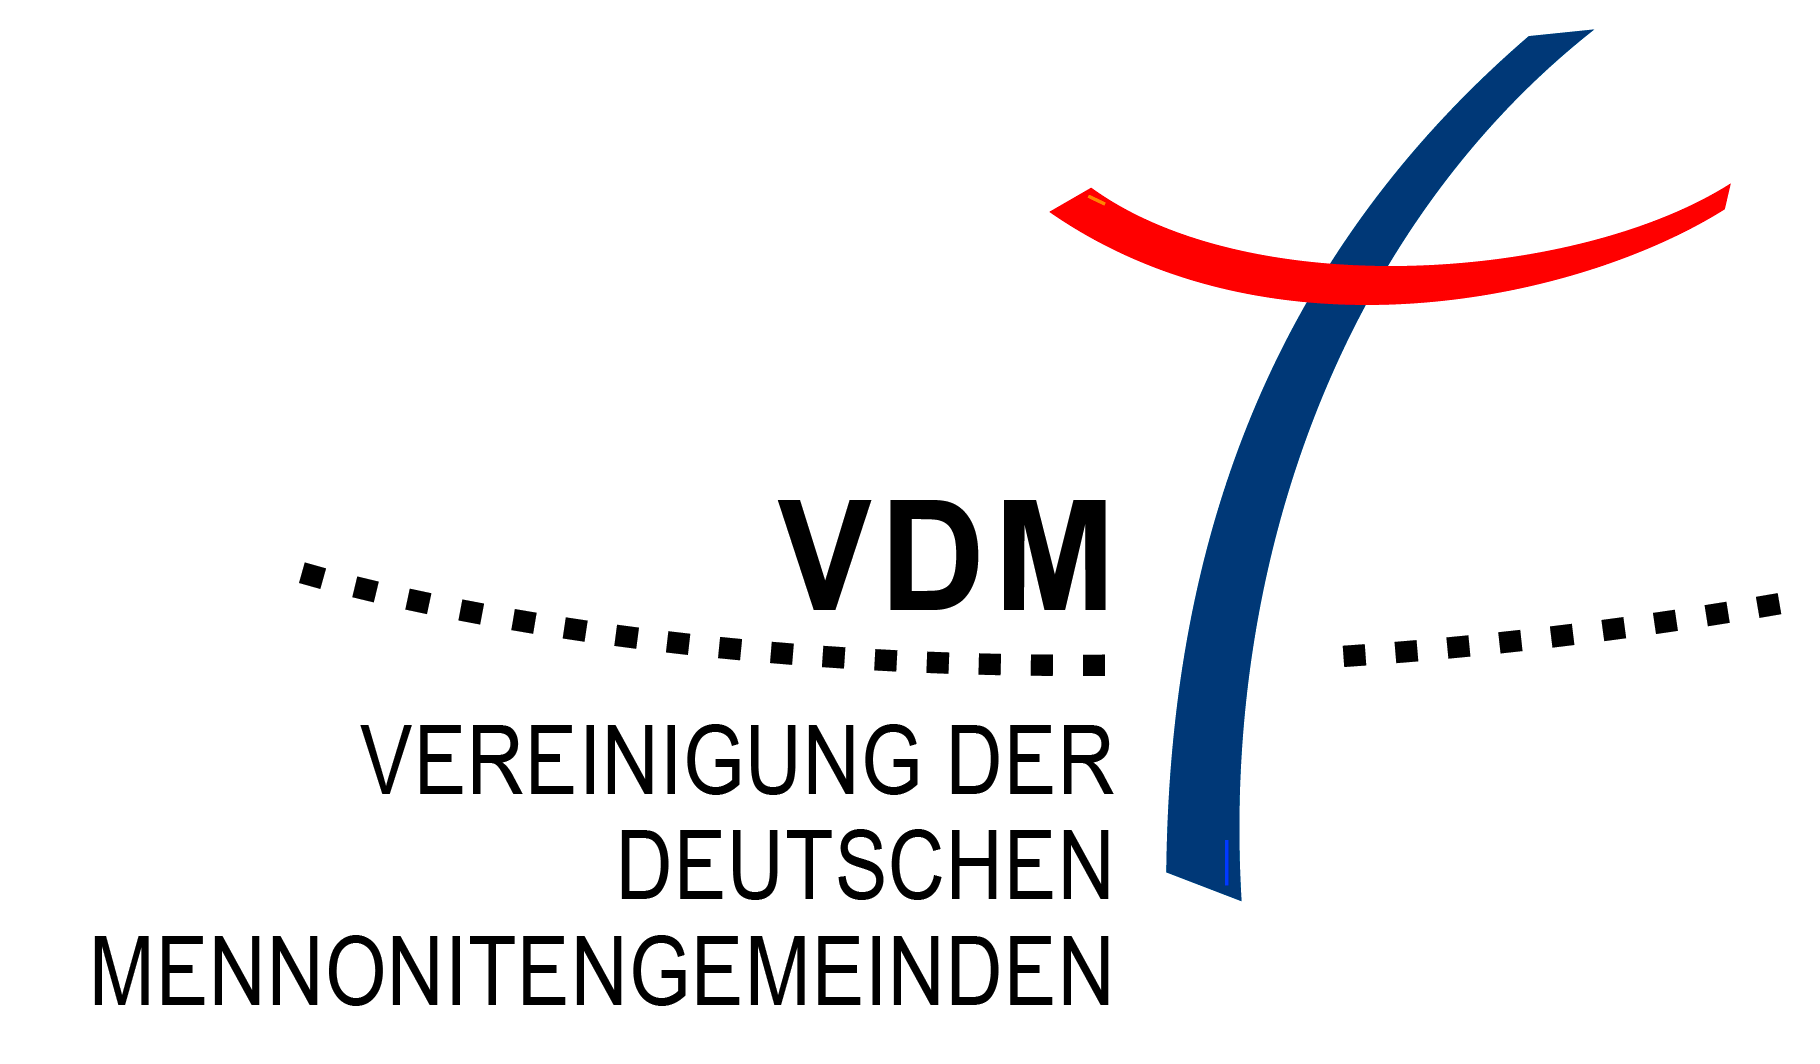 Vereinigung der Deutschen Mennonitengemeinden (VDM)